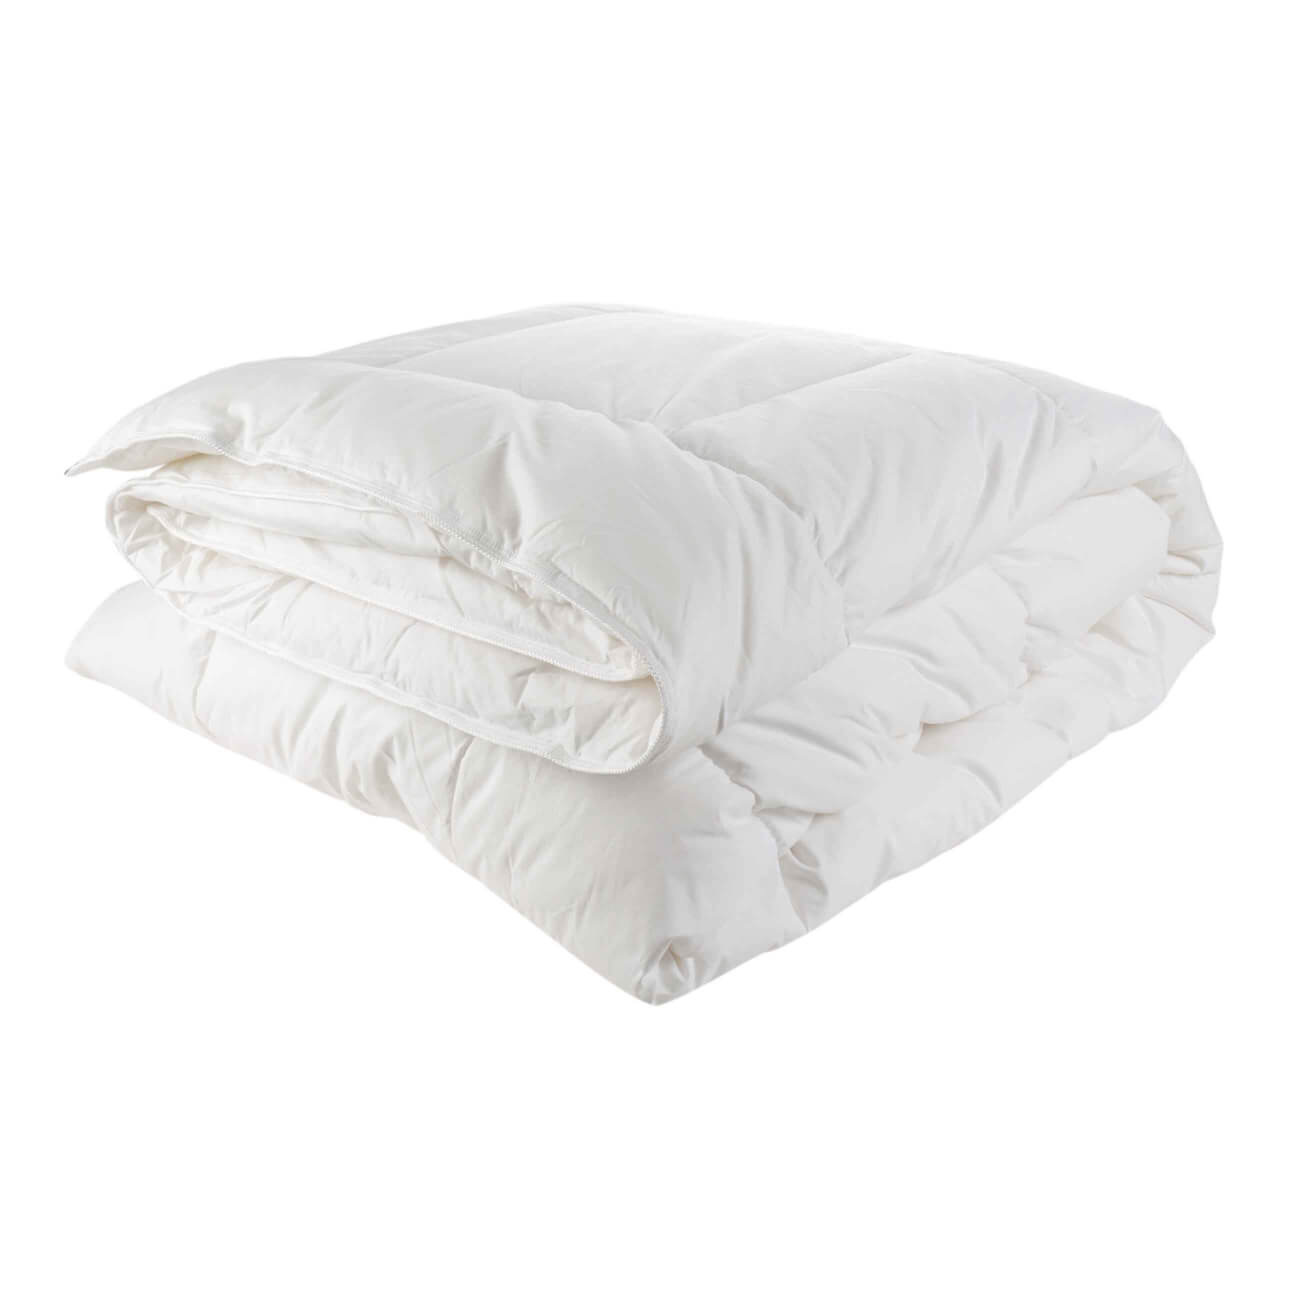 одеяло 200х220 см микрофибра super soft Одеяло, 200х220 см, хлопок/микрофибра, Soft cotton